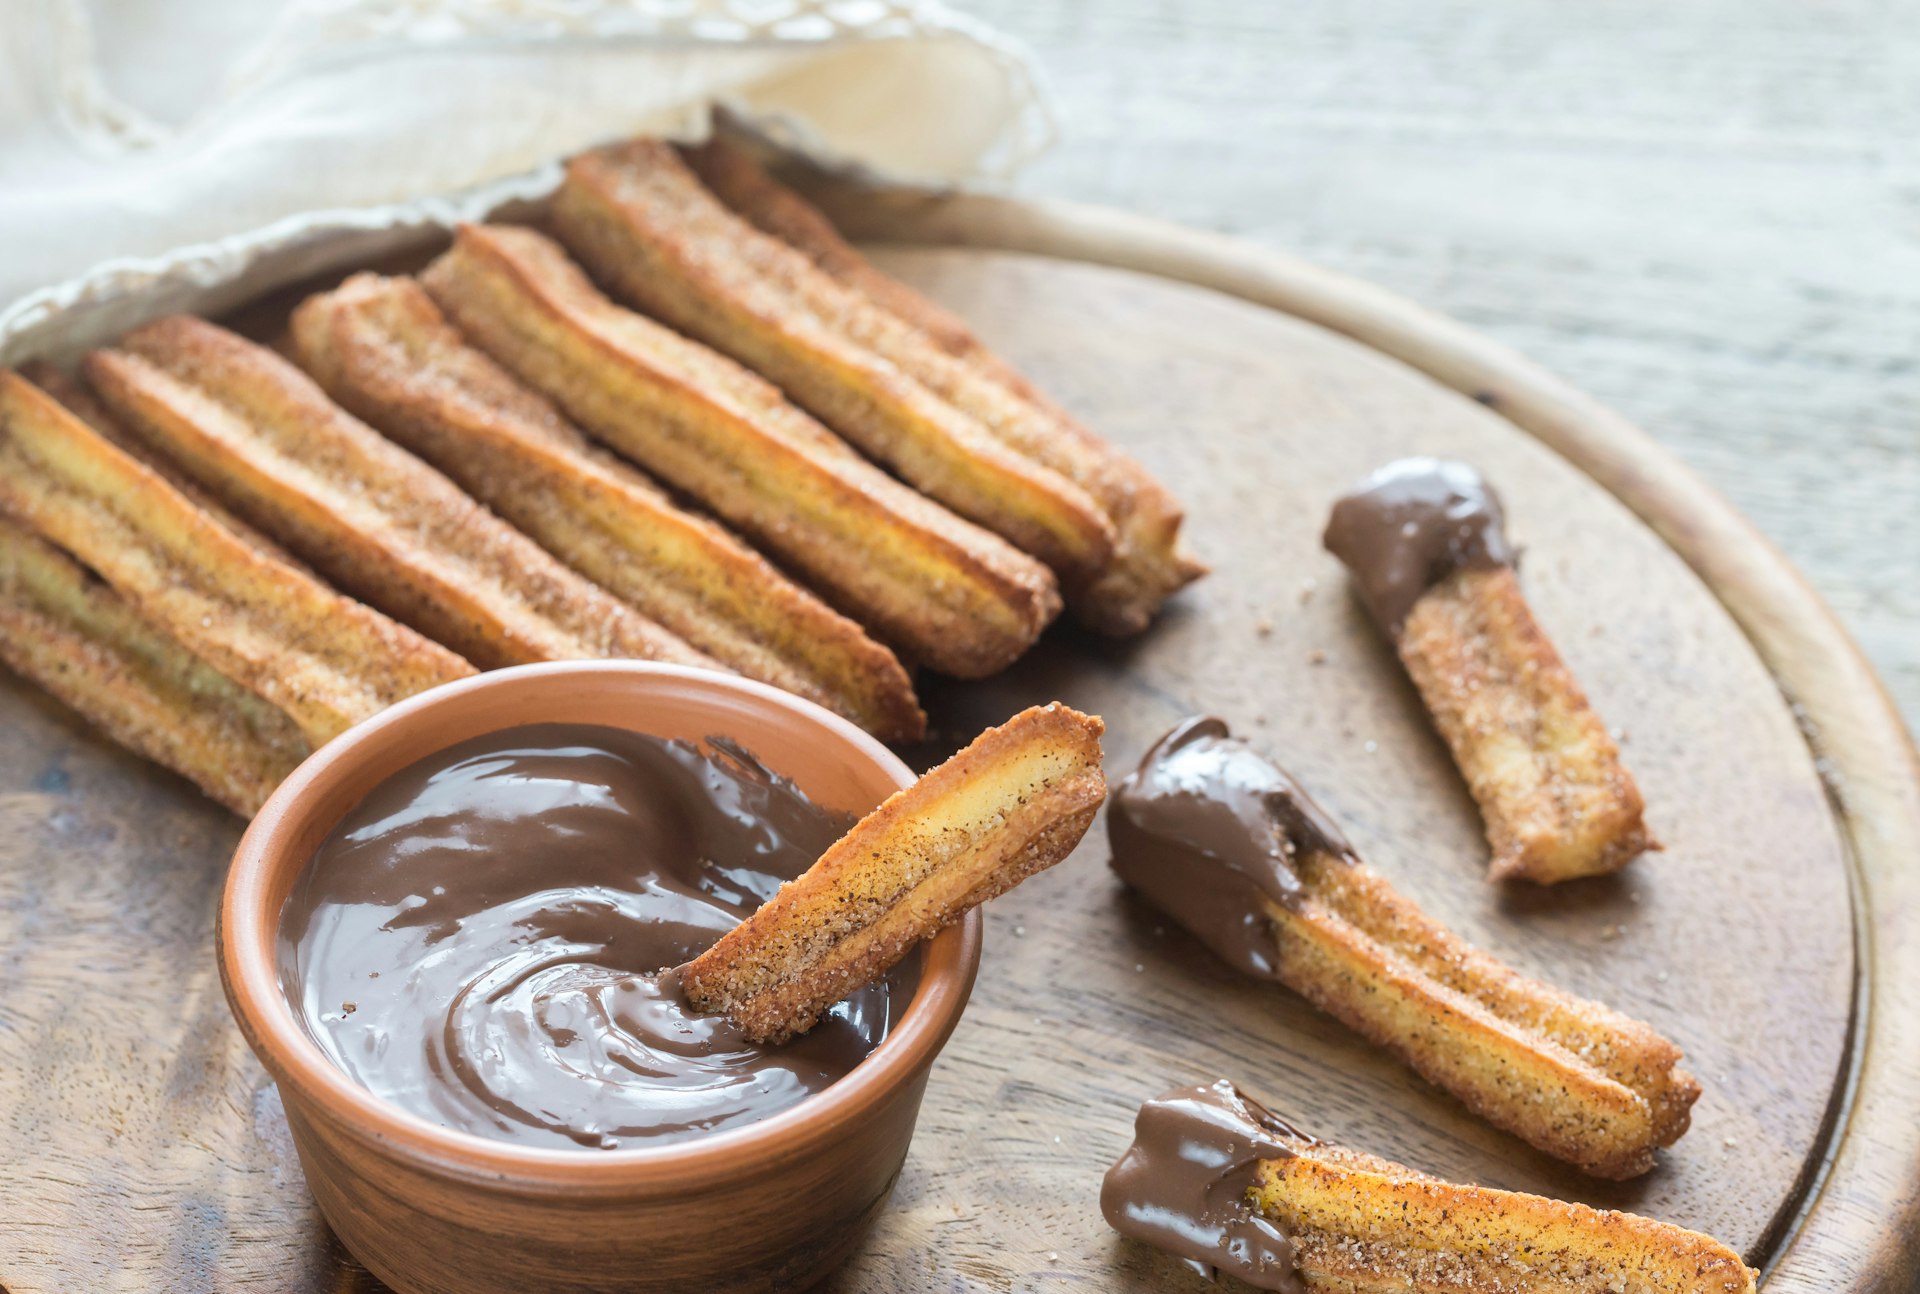 En tallrik spanska churros: långa tunna remsor av bakverk som doppas i chokladsås.